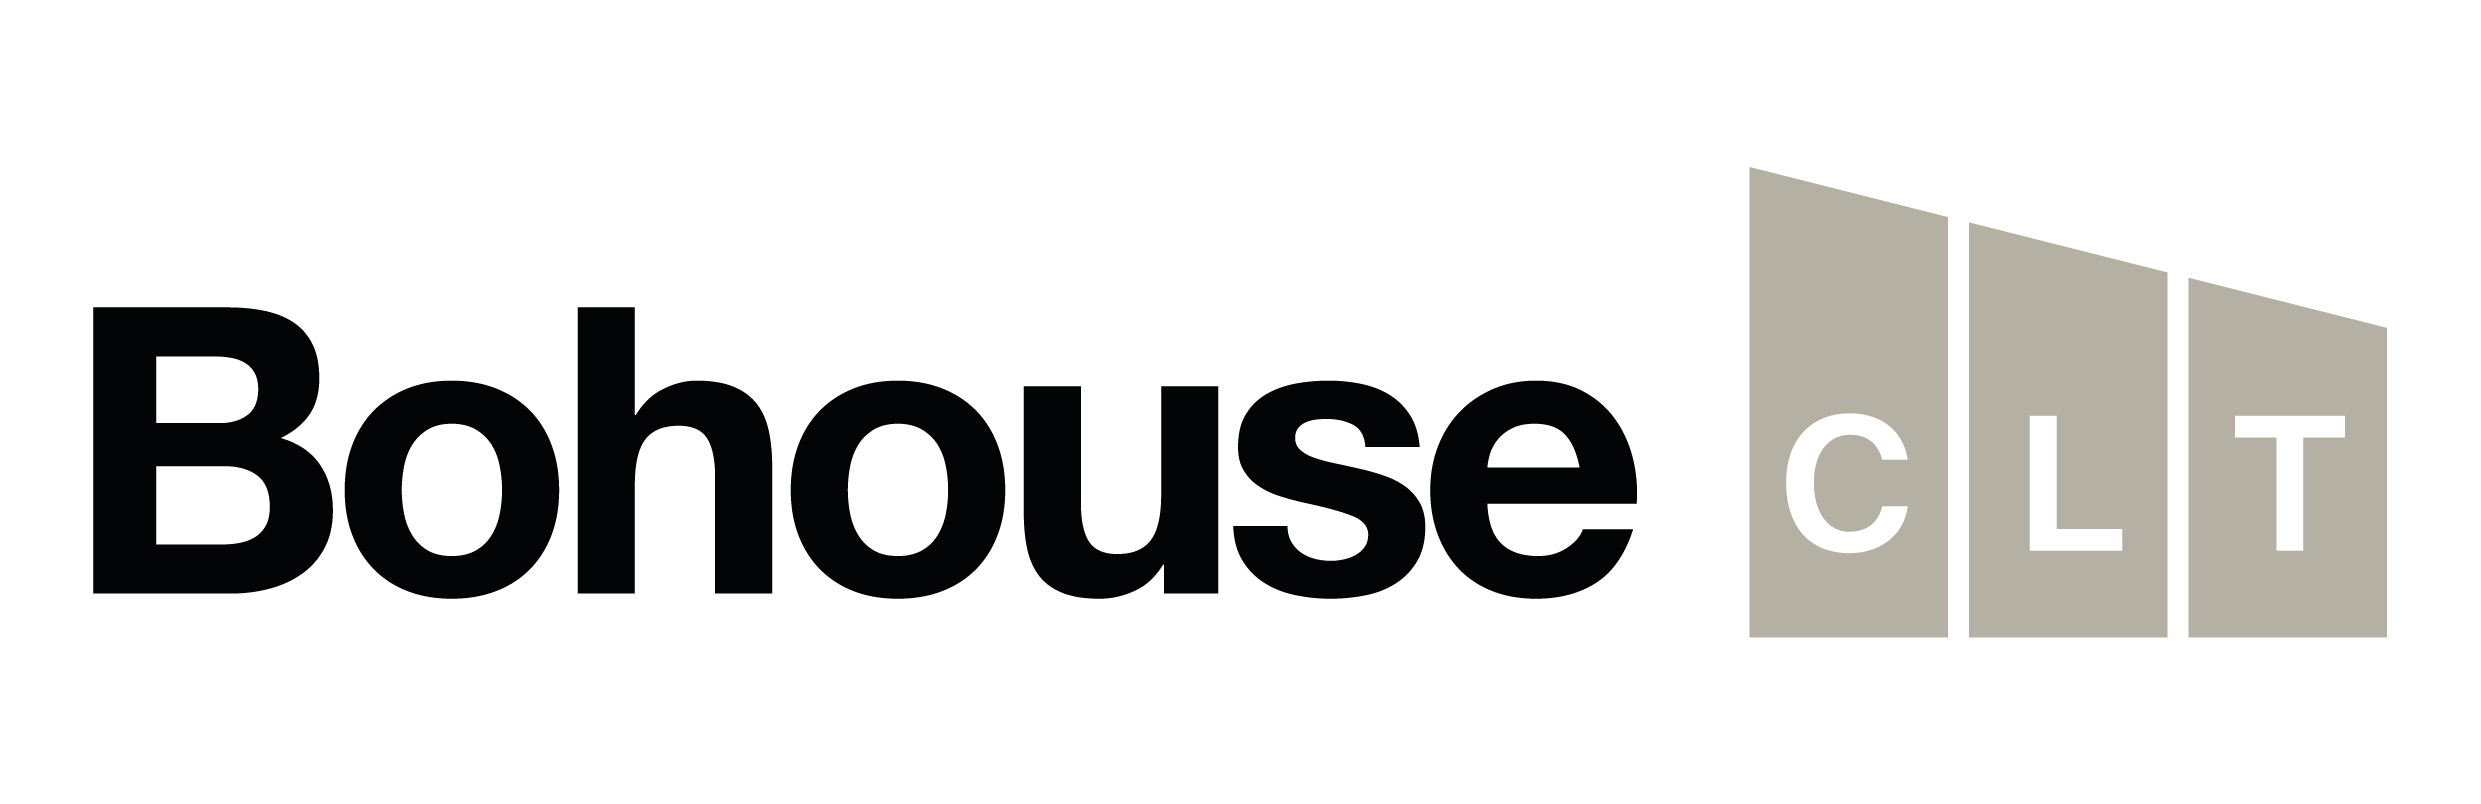 Bohouse CLT logo.